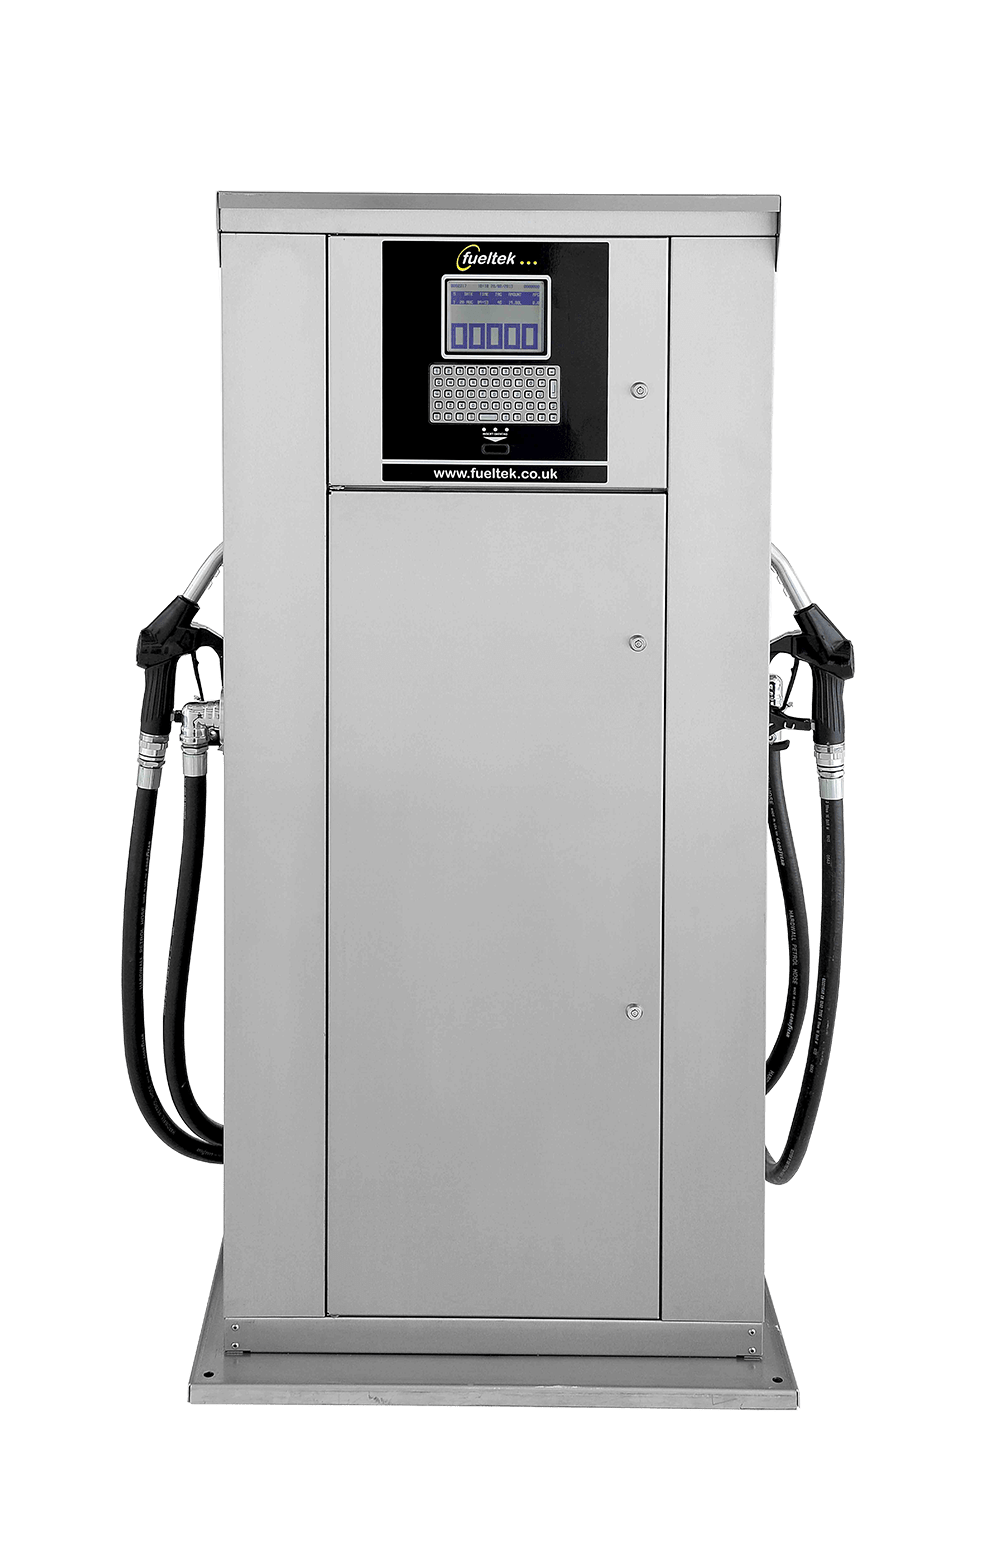 Diesel Fuel Dispense Equipment